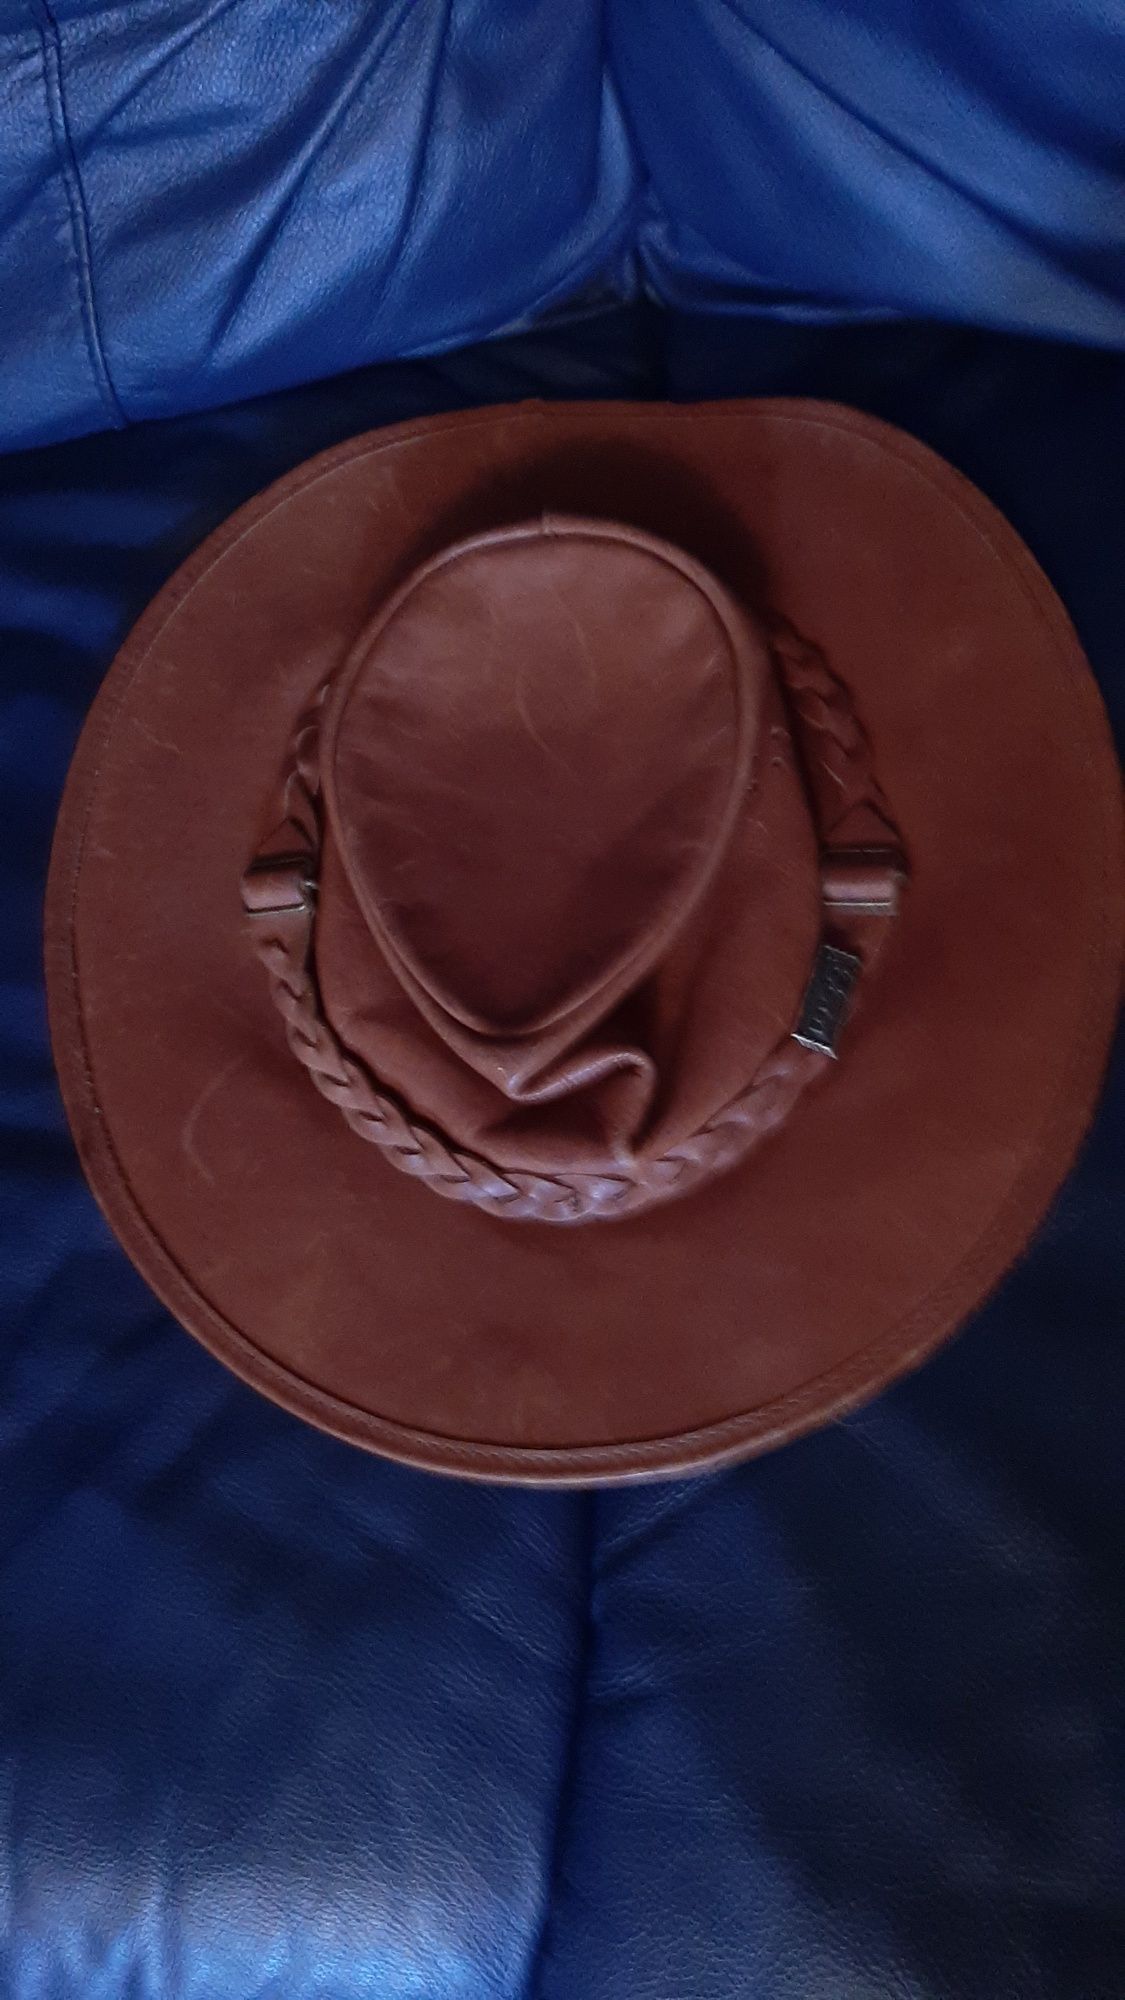 Шляпа ковбойская Toggi из натуральной кожи, объем 58-59